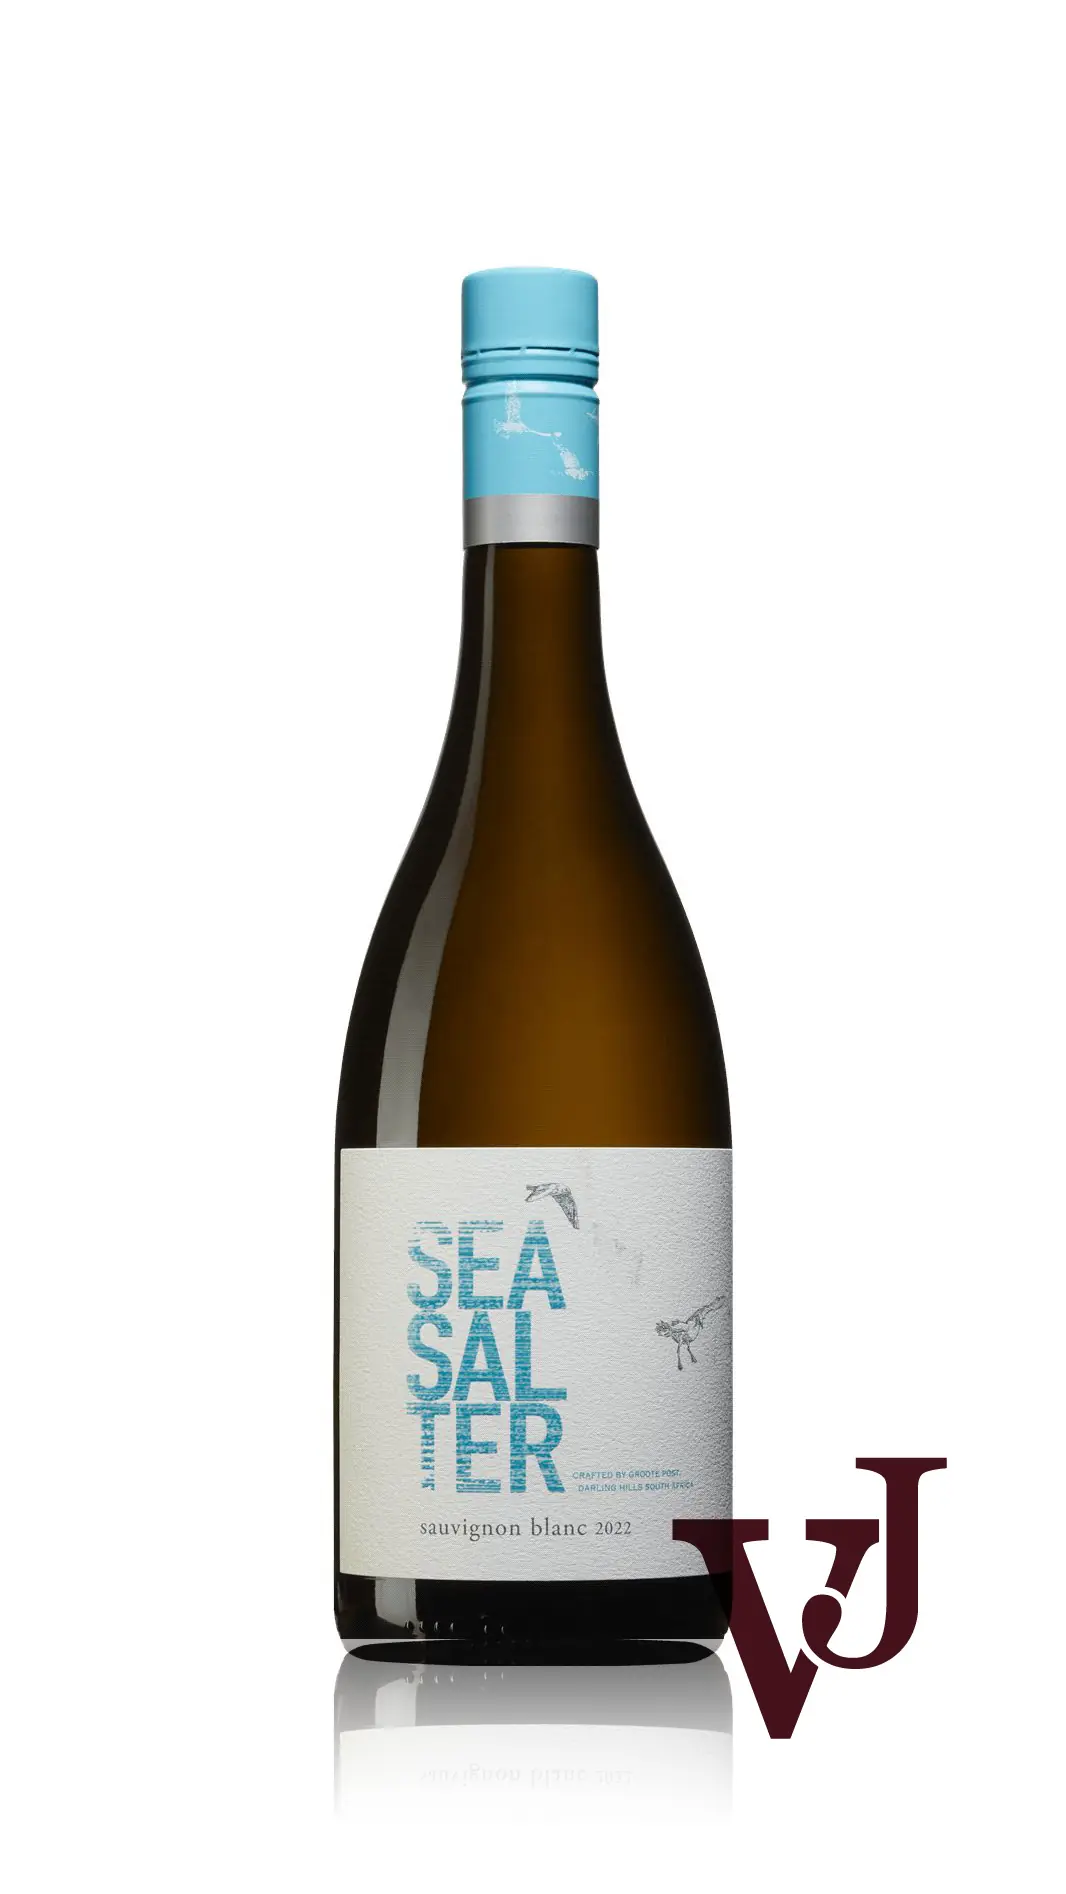 Vitt Vin - Seasalter Sauvignon blanc 2022 artikel nummer 9005901 från producenten Groote Post Vineyards från området Sydafrika - Vinjournalen.se